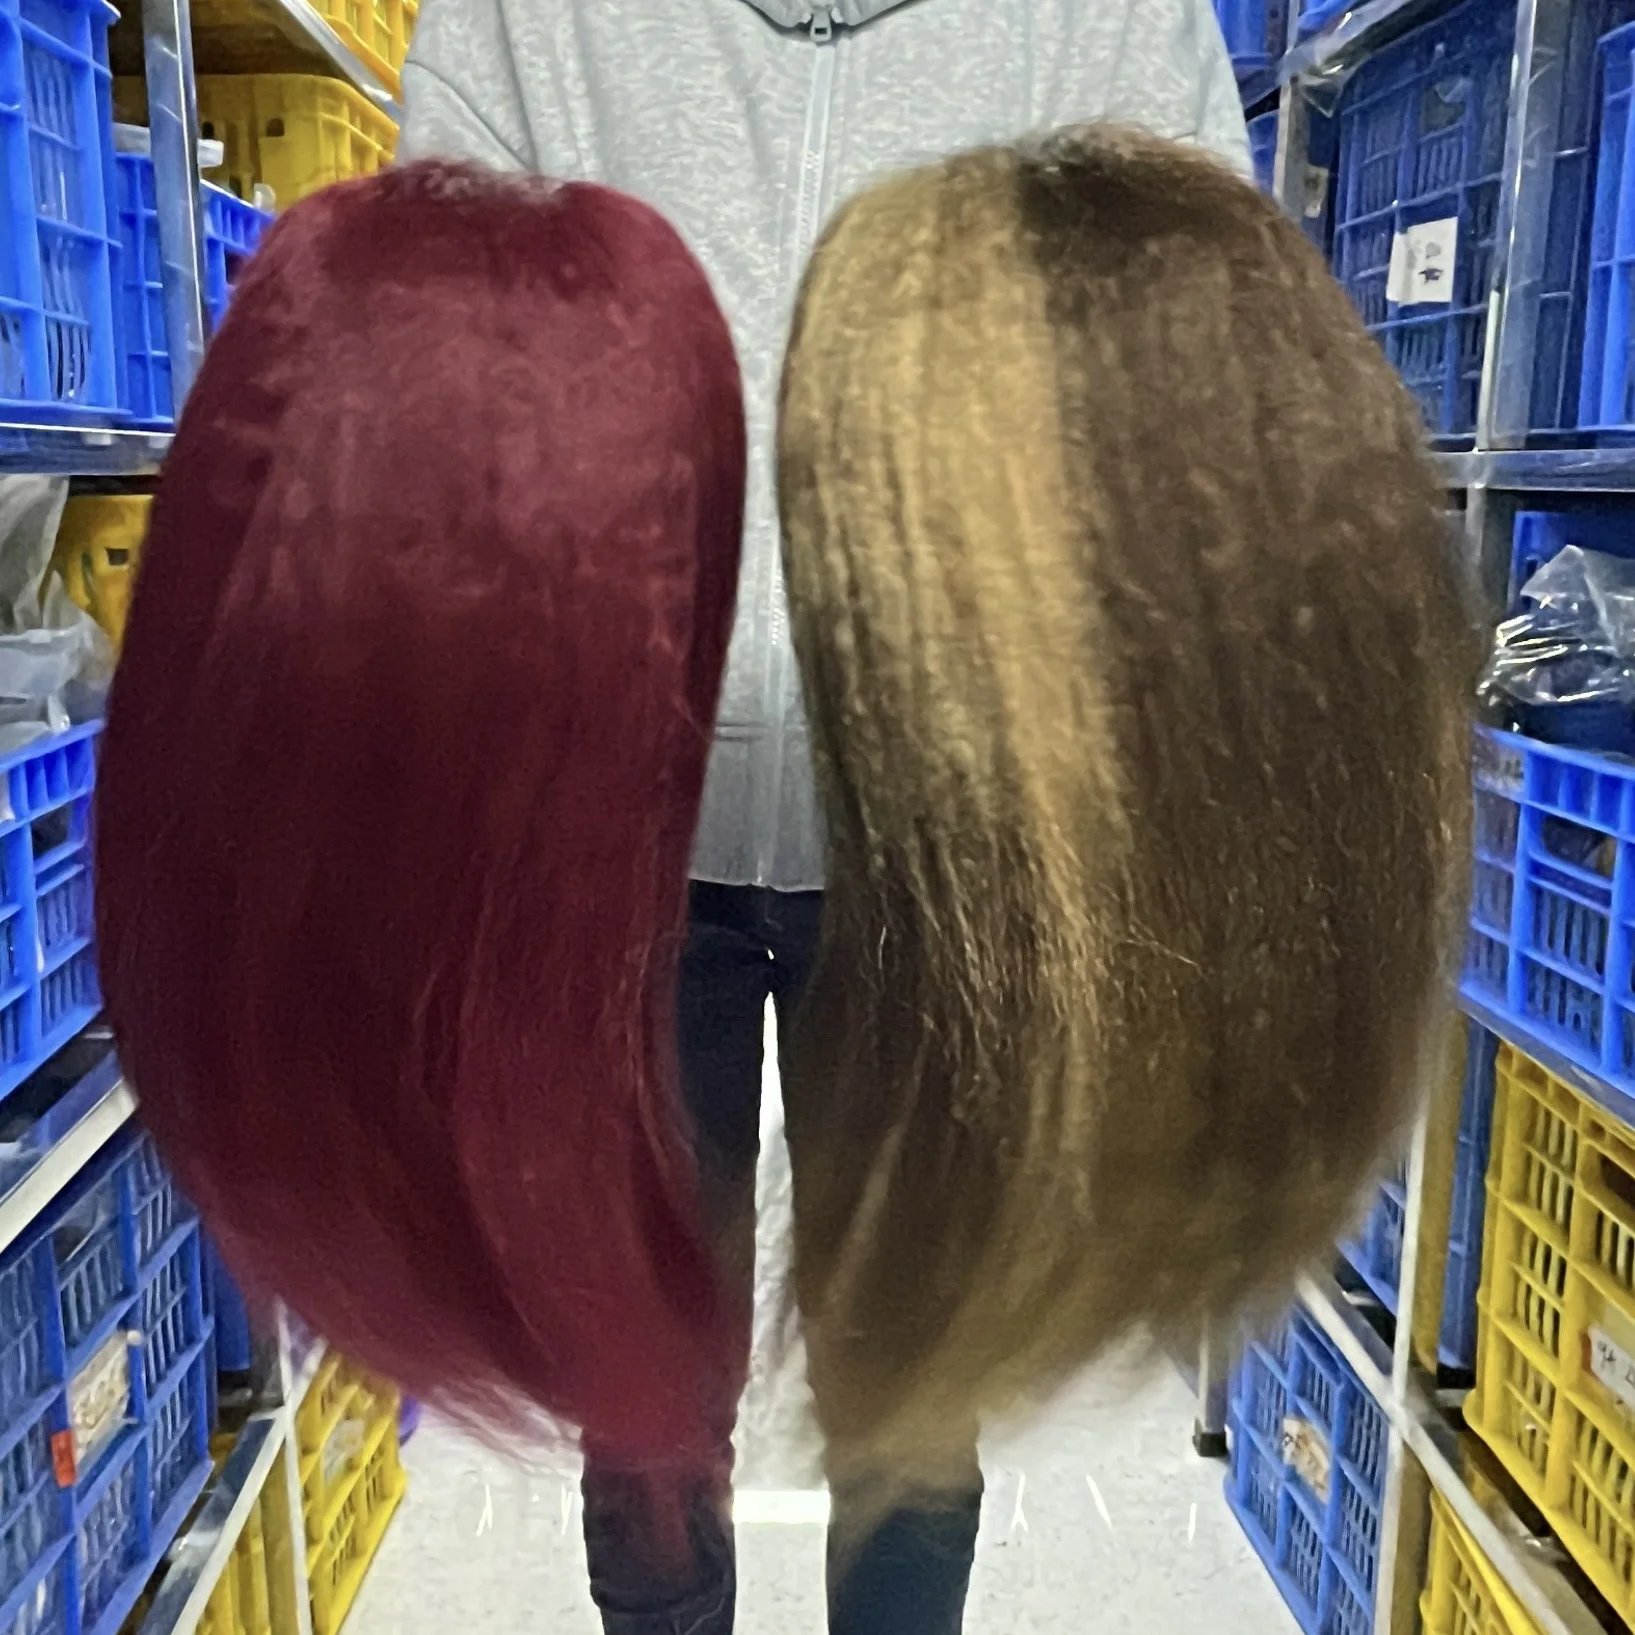 Human Hair Hd Lace Frontal Wig Vendor Bob Wigs Human Hair Lace Front Straight Bob Wigs For Black Women